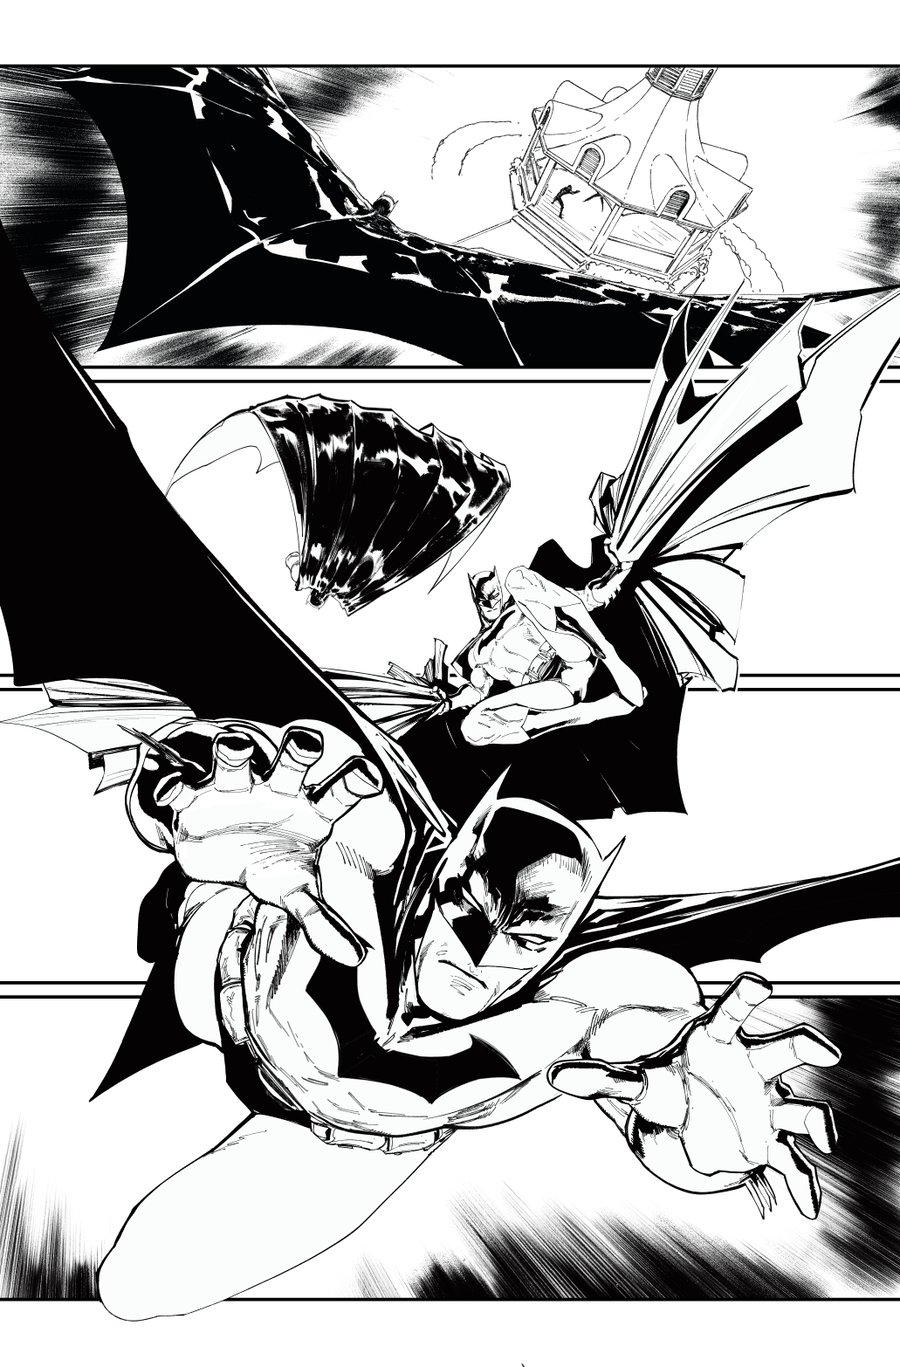 Image of BATMAN KILLING TIME #5 p.22